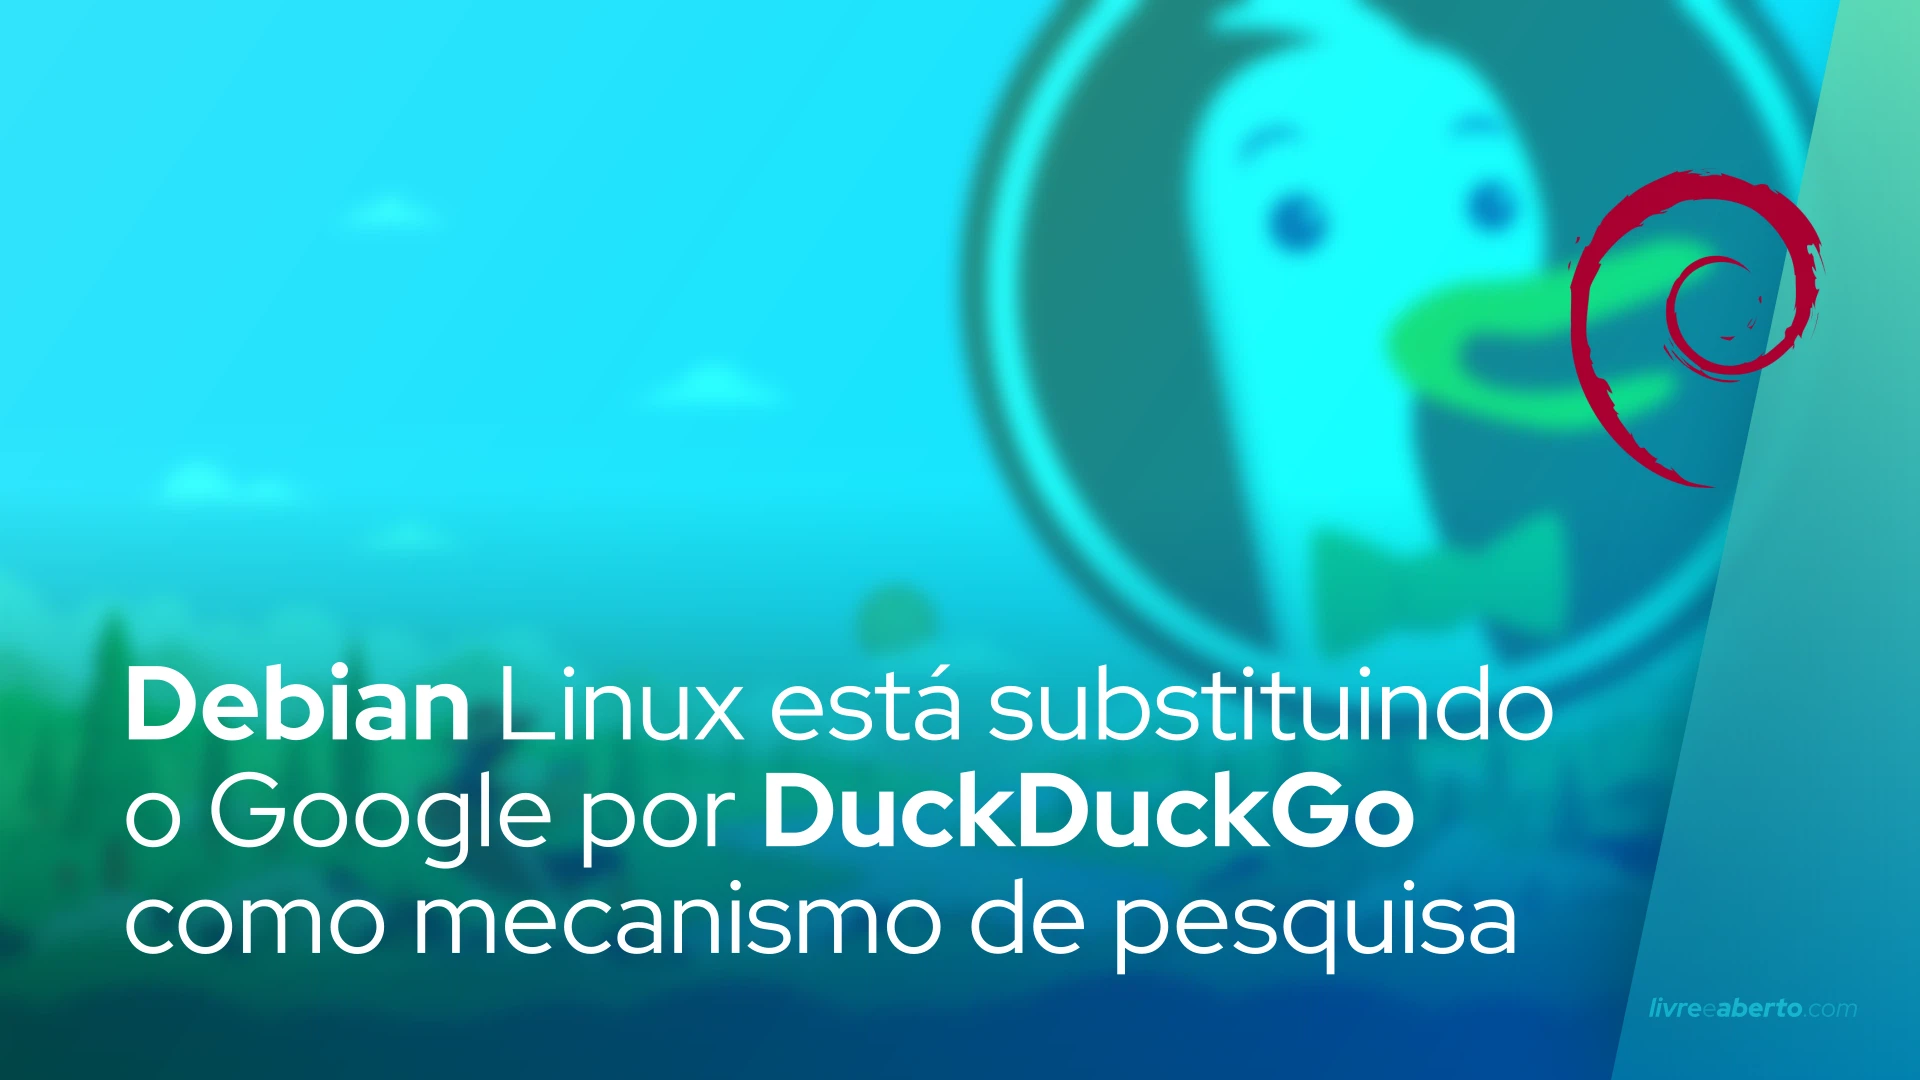 Debian Linux está substituindo o Google por DuckDuckGo como mecanismo de pesquisa padrão para o Chromium